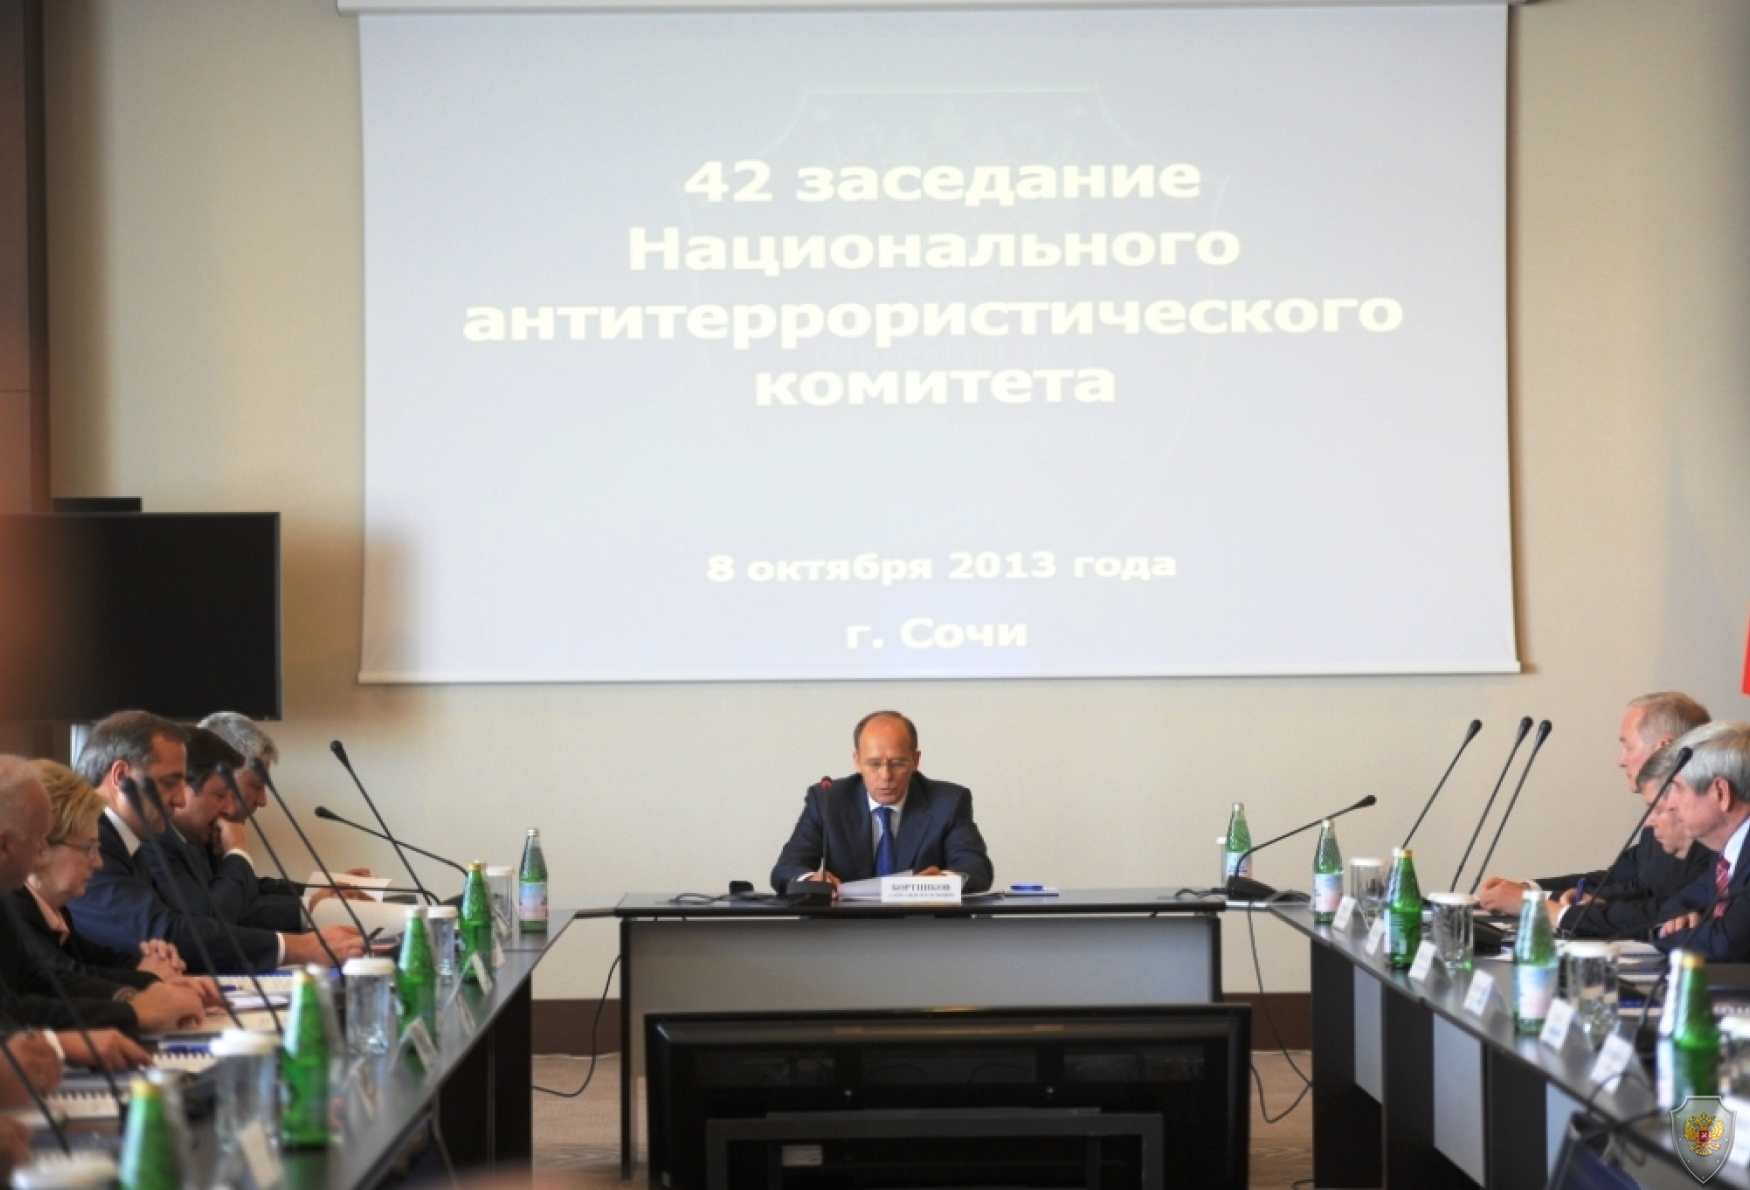 8 октября 2013 года проведено заседание Национального антитеррористического комитета